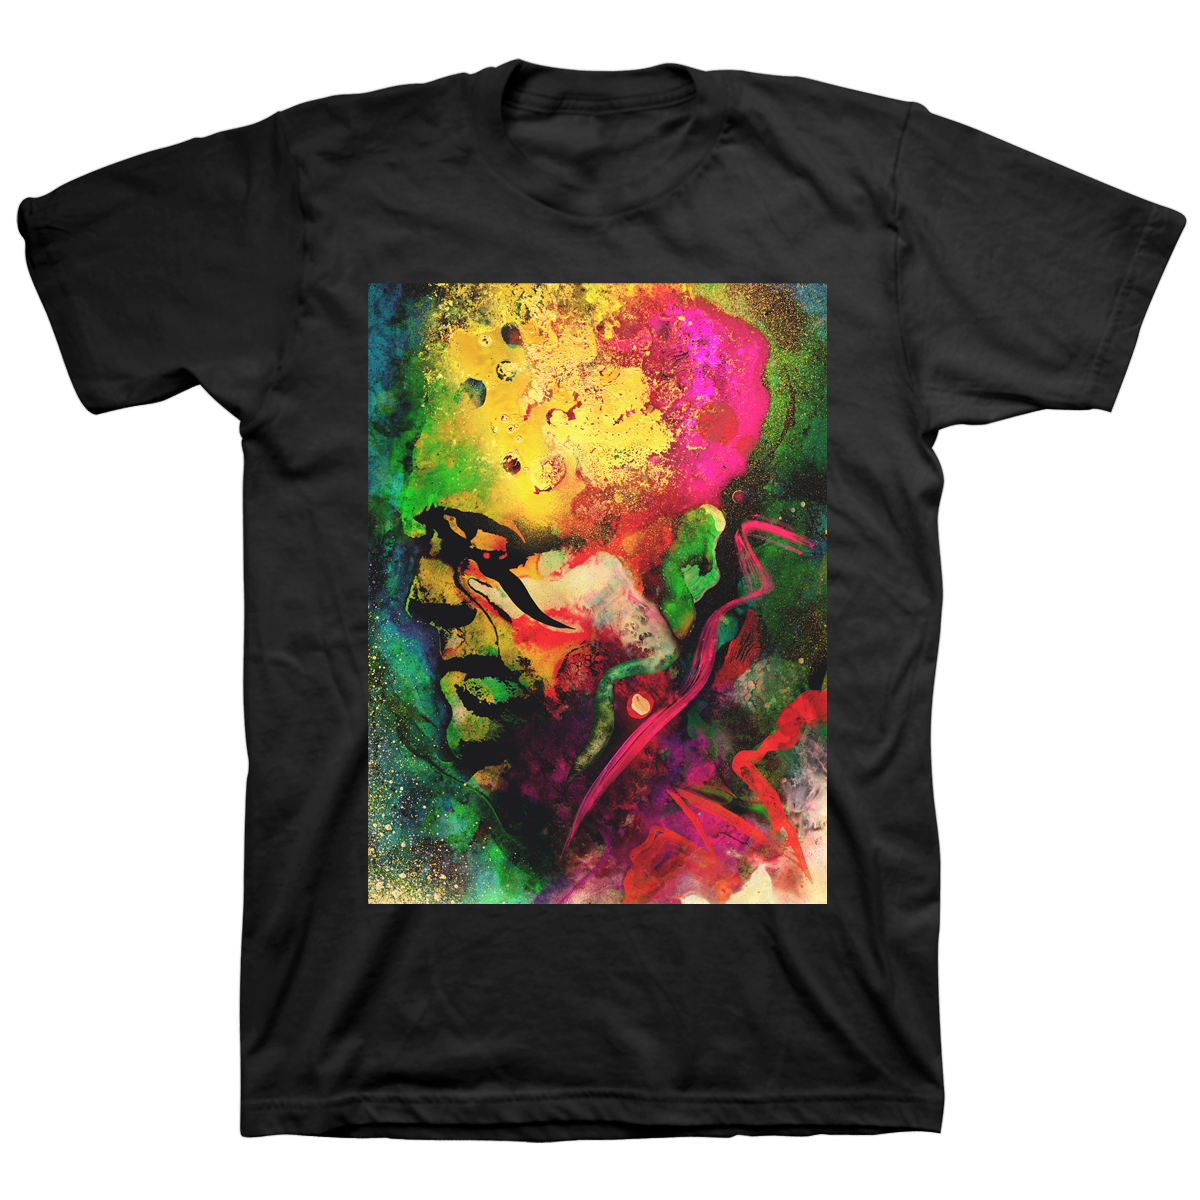 J. Bannon "Frankenstein's Monster" T-Shirt